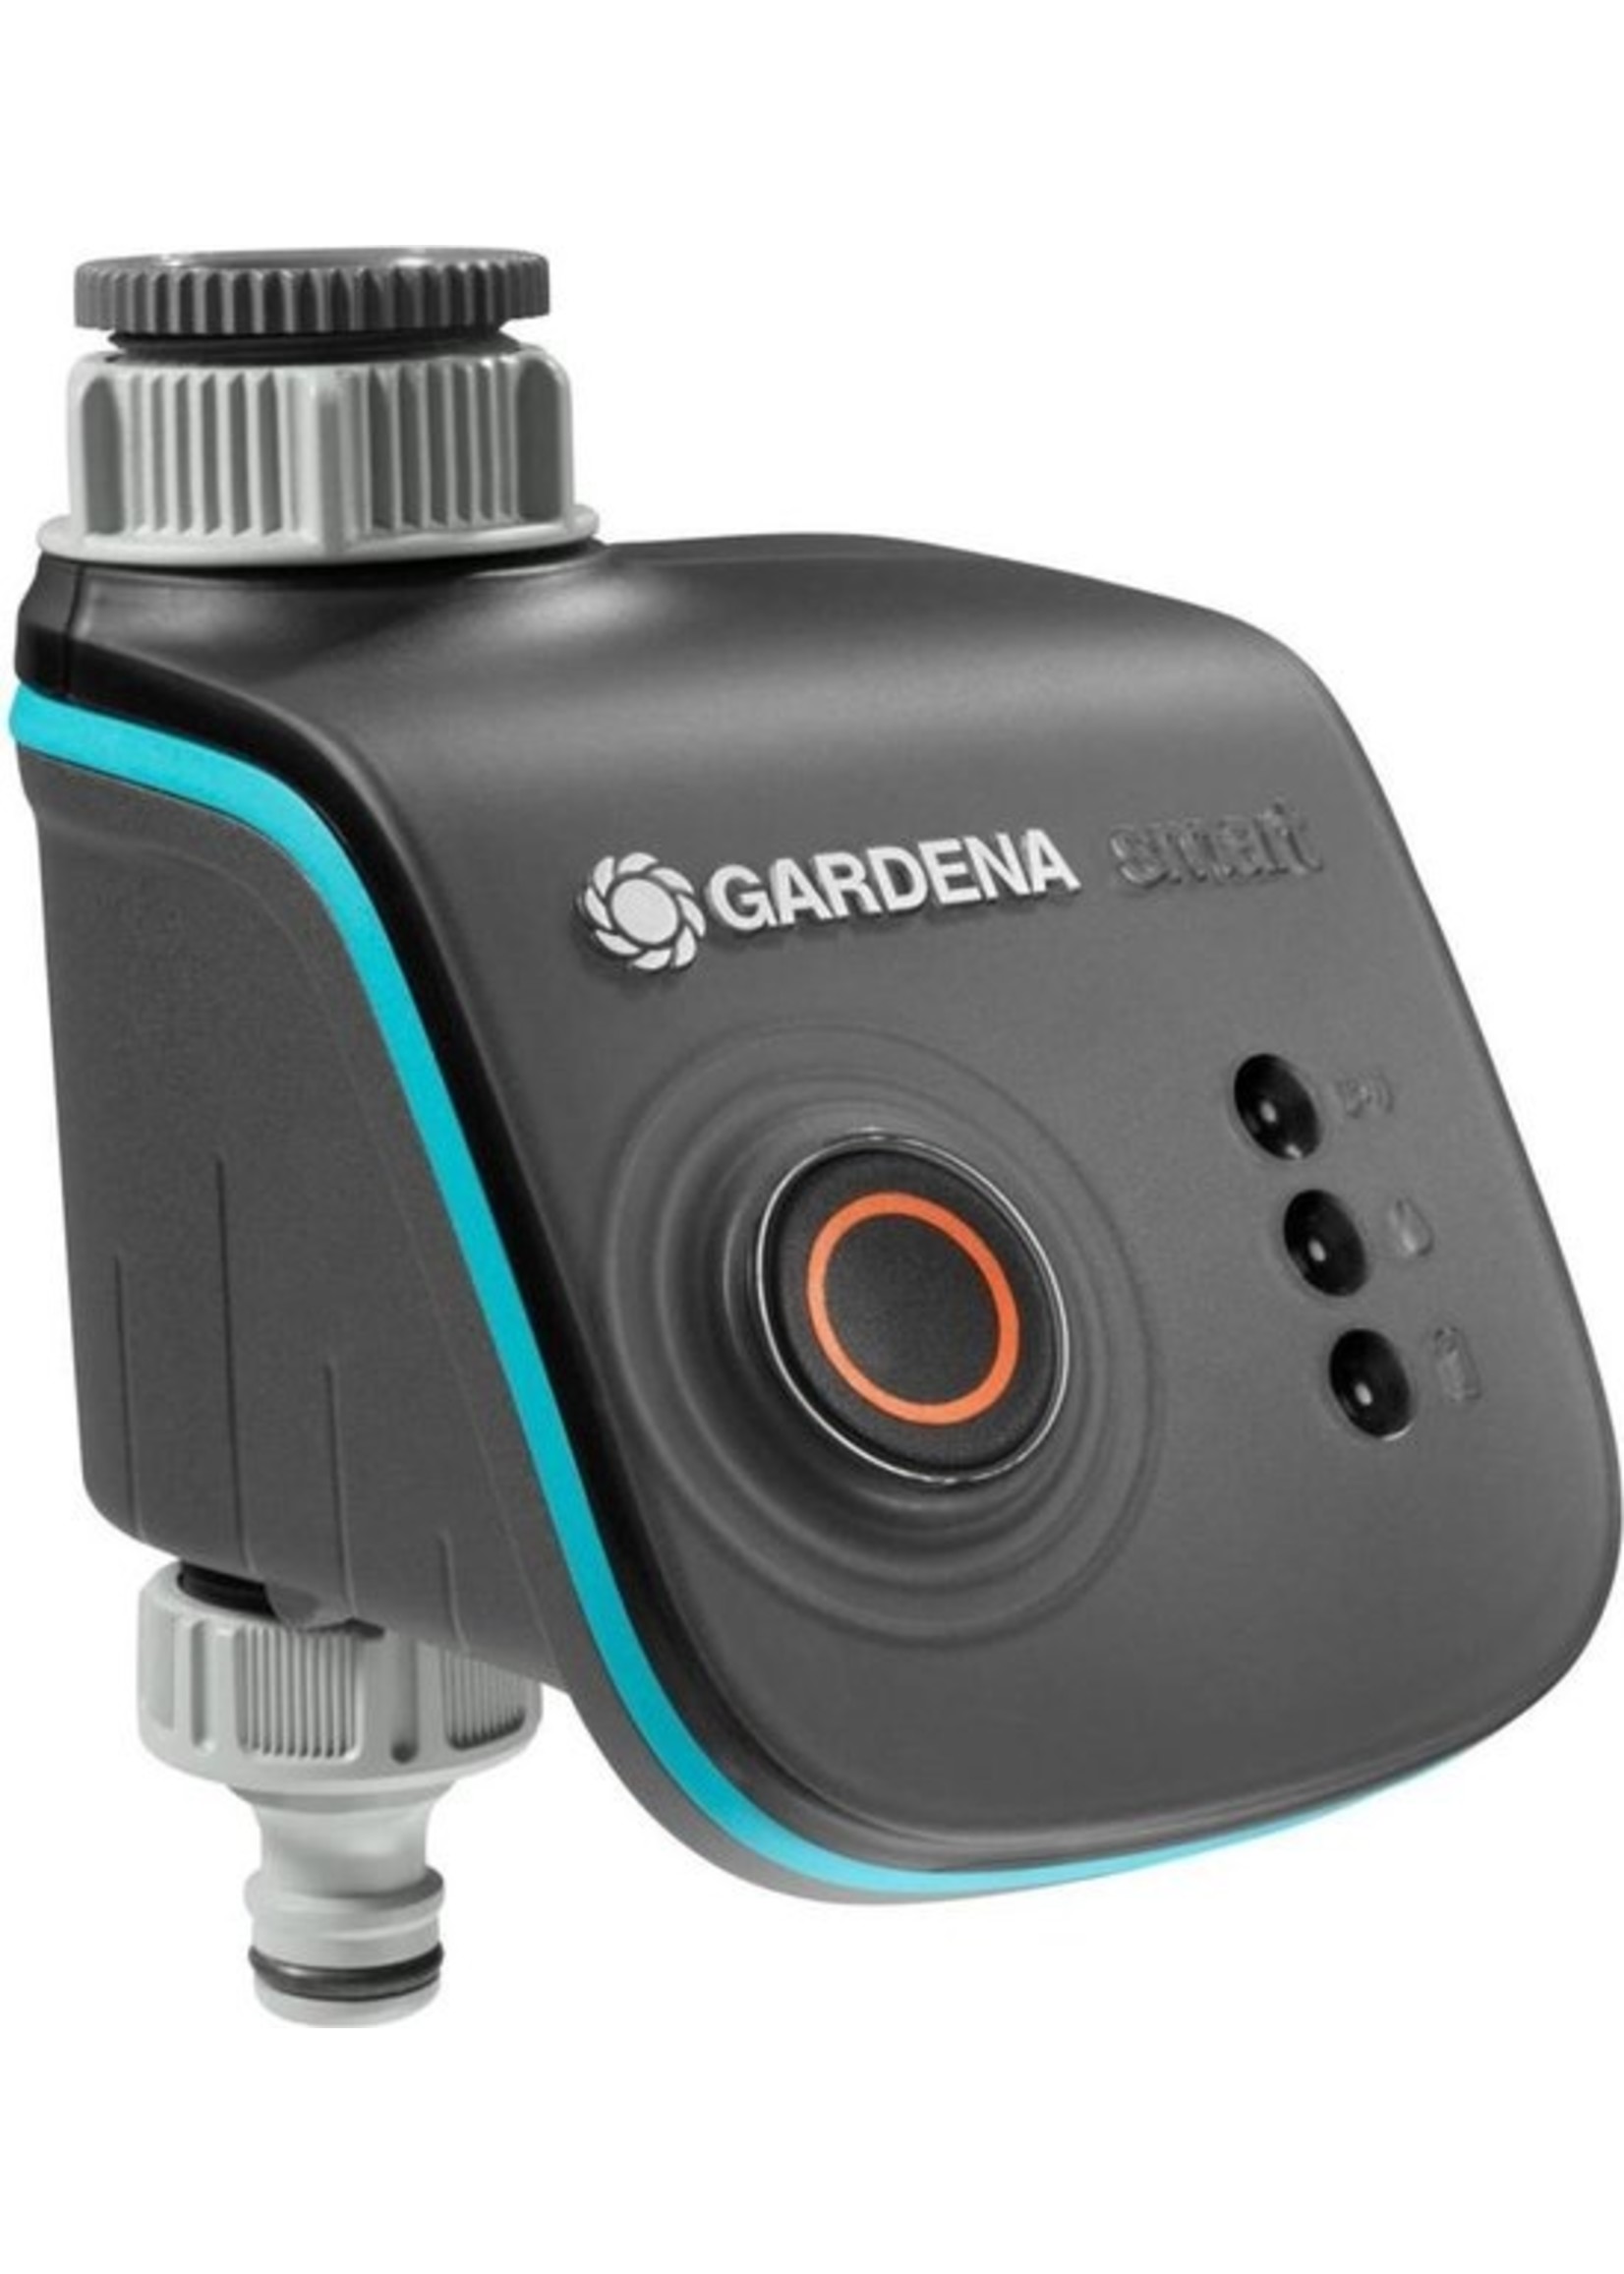 Gardena GARDENA Smart Water Control Besproeiingscomputer - Besproeiingsduur 1min tot 10u